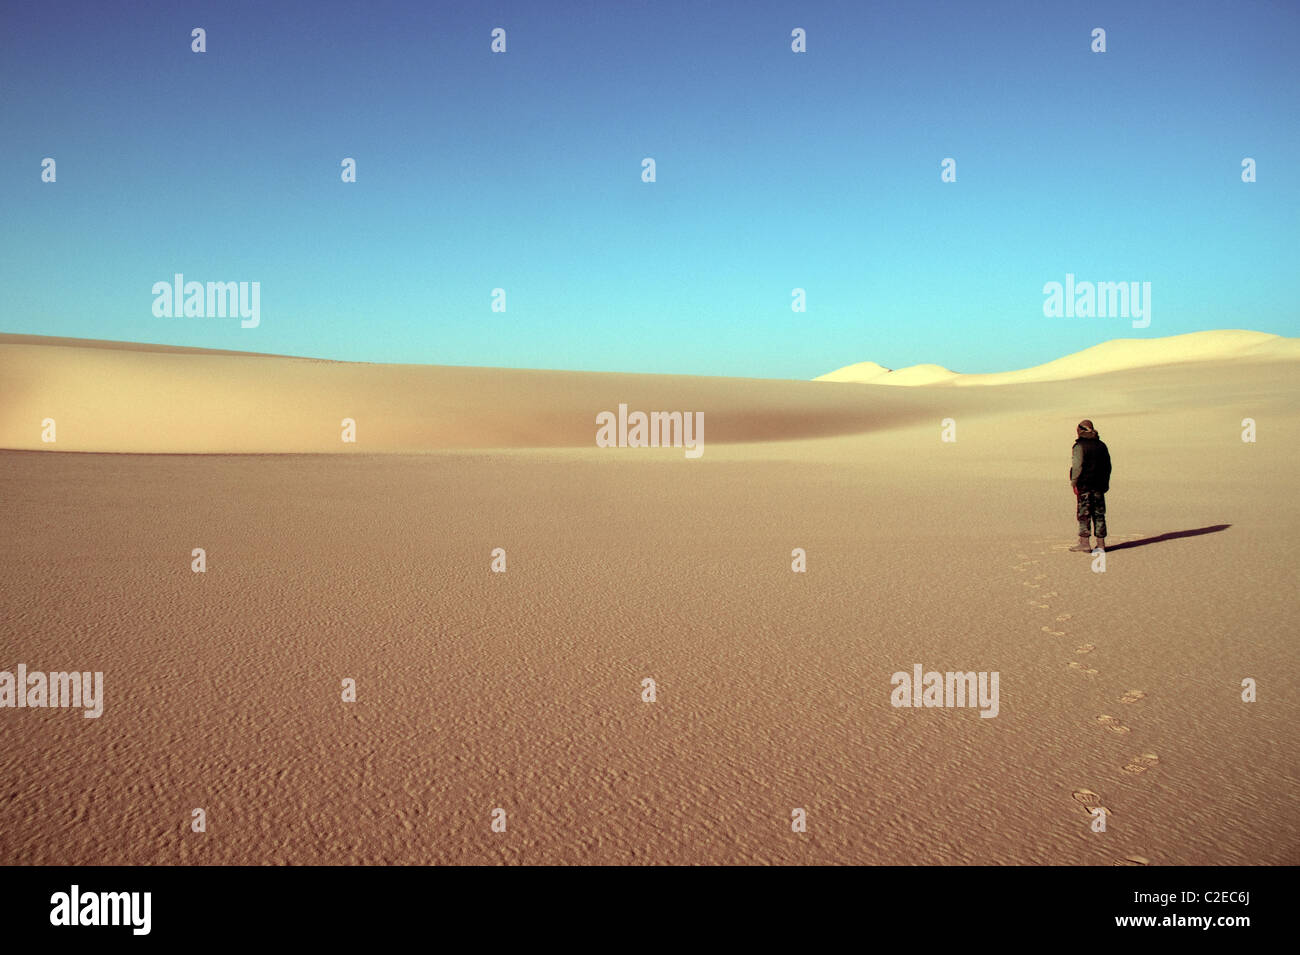 Ein Wüstenforscher allein in den goldenen Dünen des Großen Sandmeers in der Westwüstenregion der ägyptischen Sahara, nahe der Oase Dakhla, Ägypten. Stockfoto